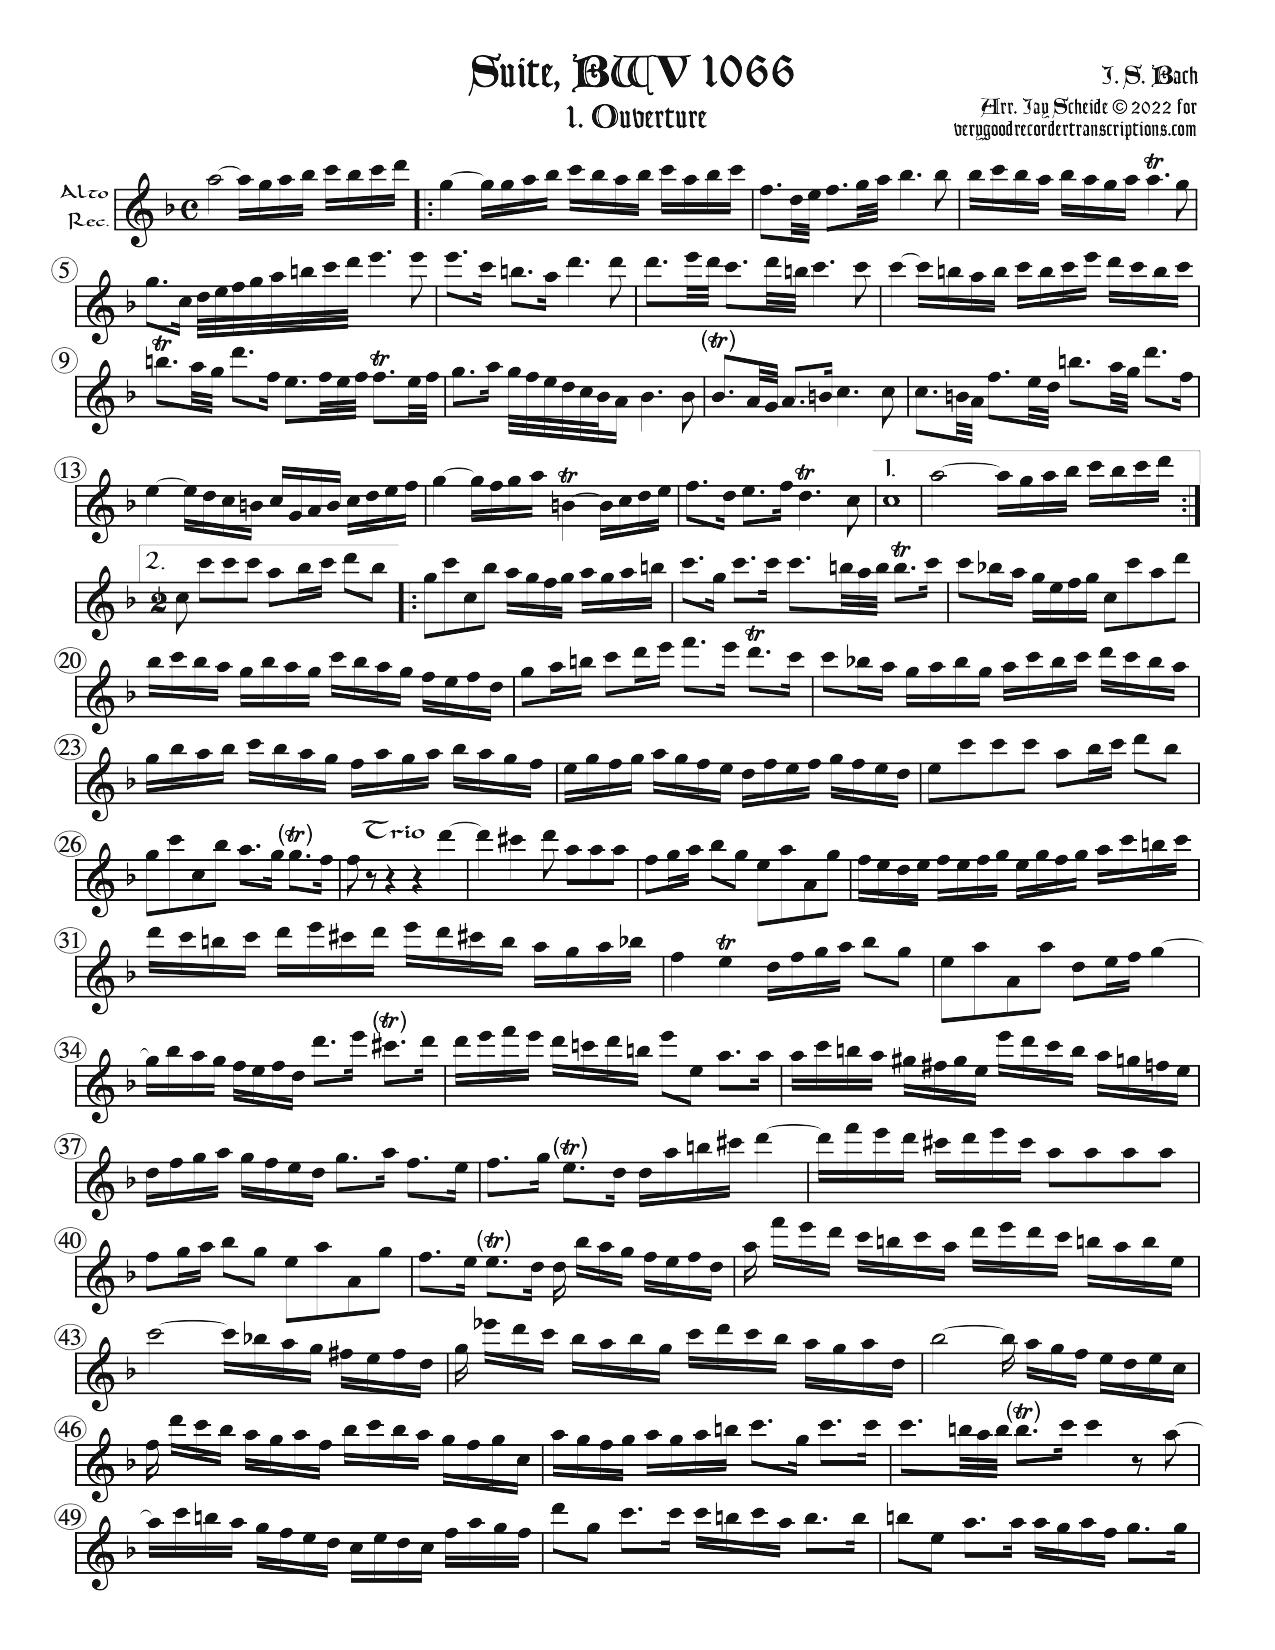 Suite No. 1, 1st movement, BWV 1066